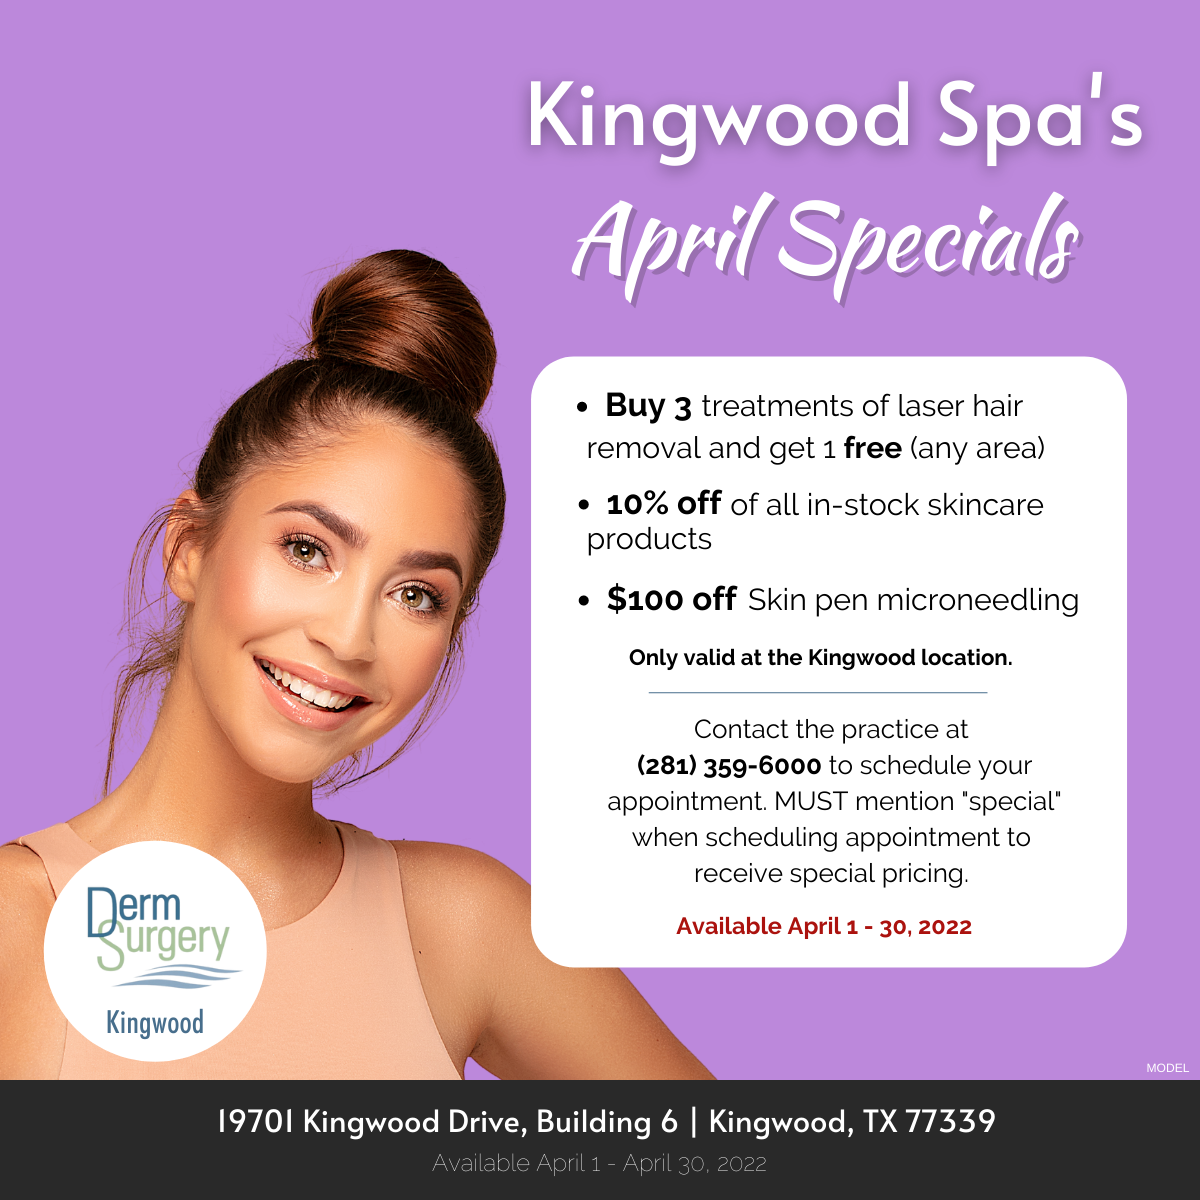 Kingwood Spa's April Specials